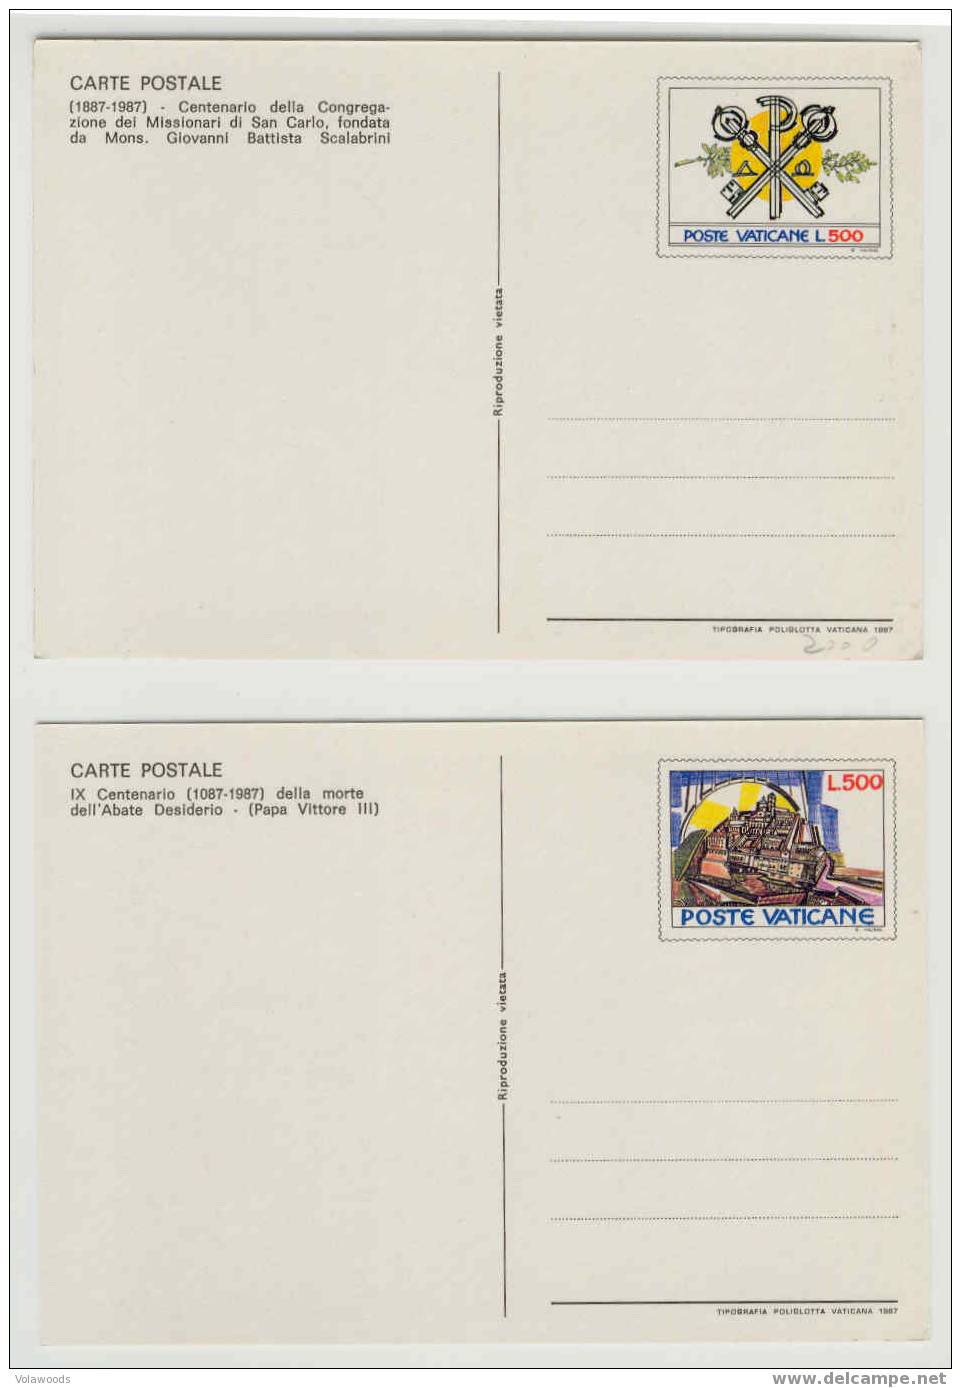 Vaticano - Cartoline Postali Nuove In Serie Completa Commemorative - 1987 - Ganzsachen